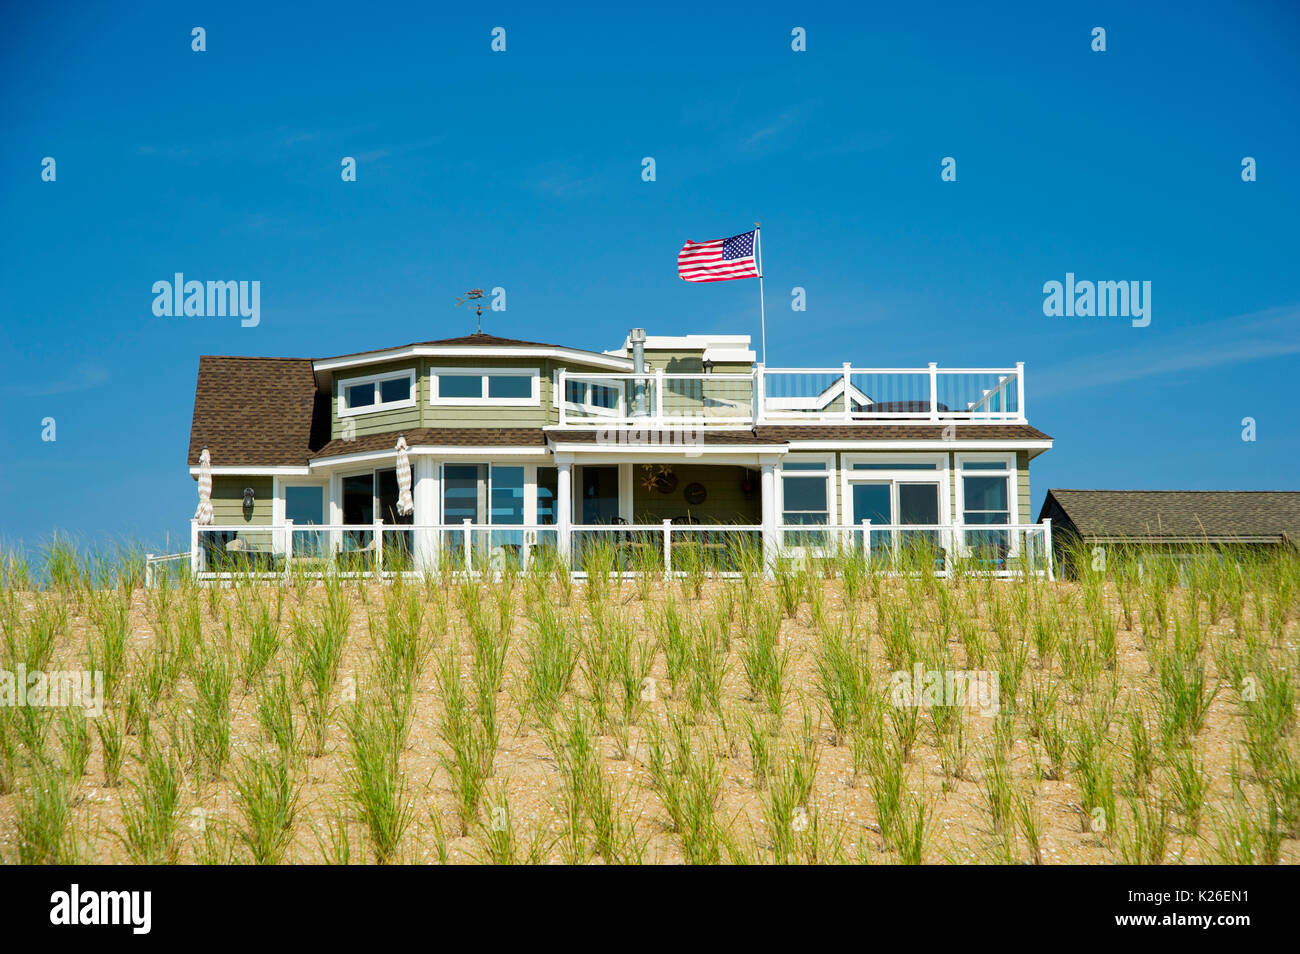 Casa de playa de dunas con bandera americana Foto de stock